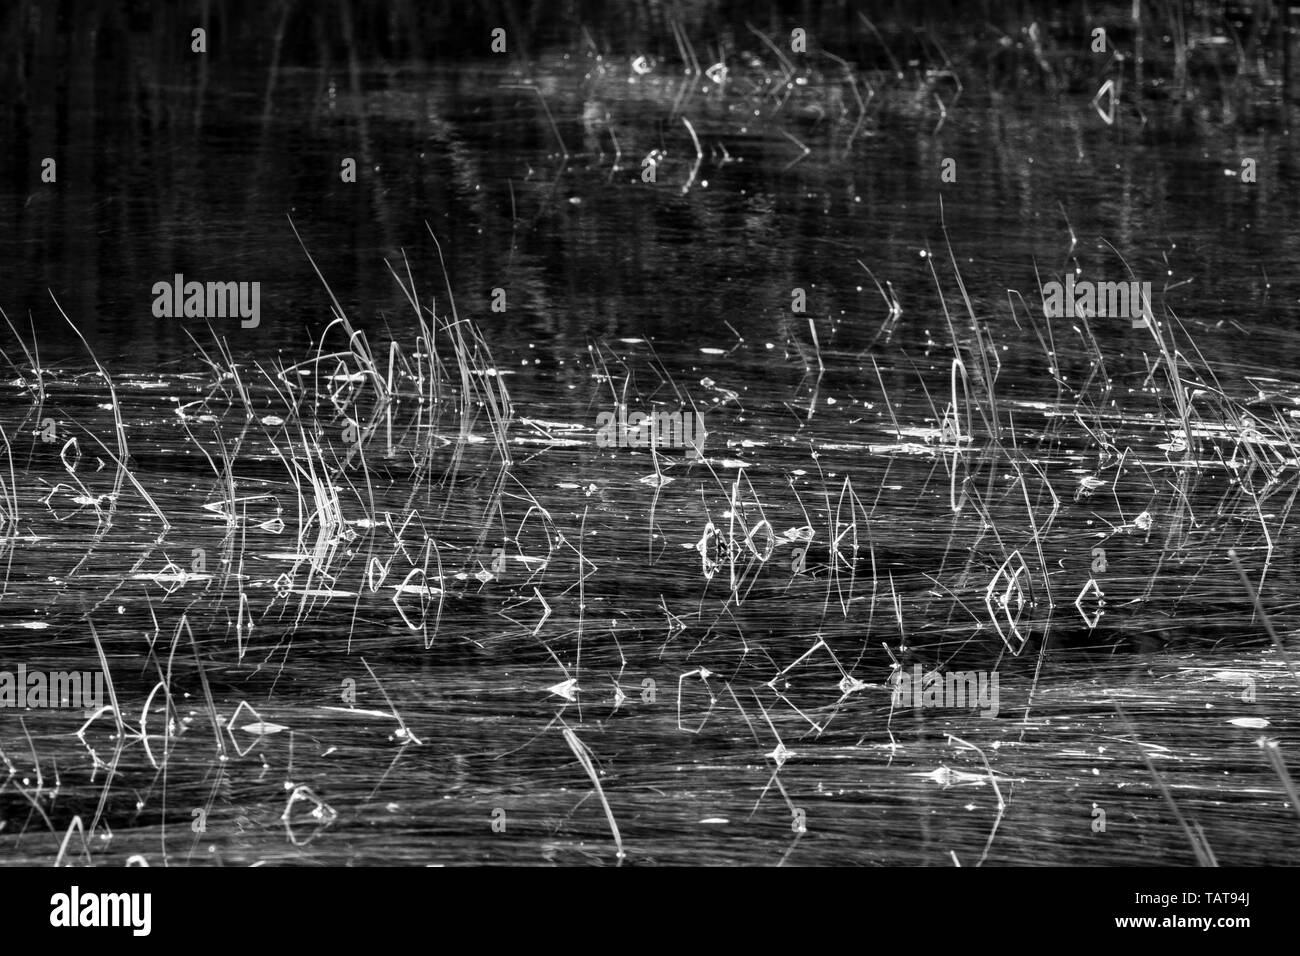 Erba, paglia e canneti in acqua, lame di erba riflessi nell'acqua. Abstract background. Swamp. In bianco e nero. Monocromatico. Foto Stock